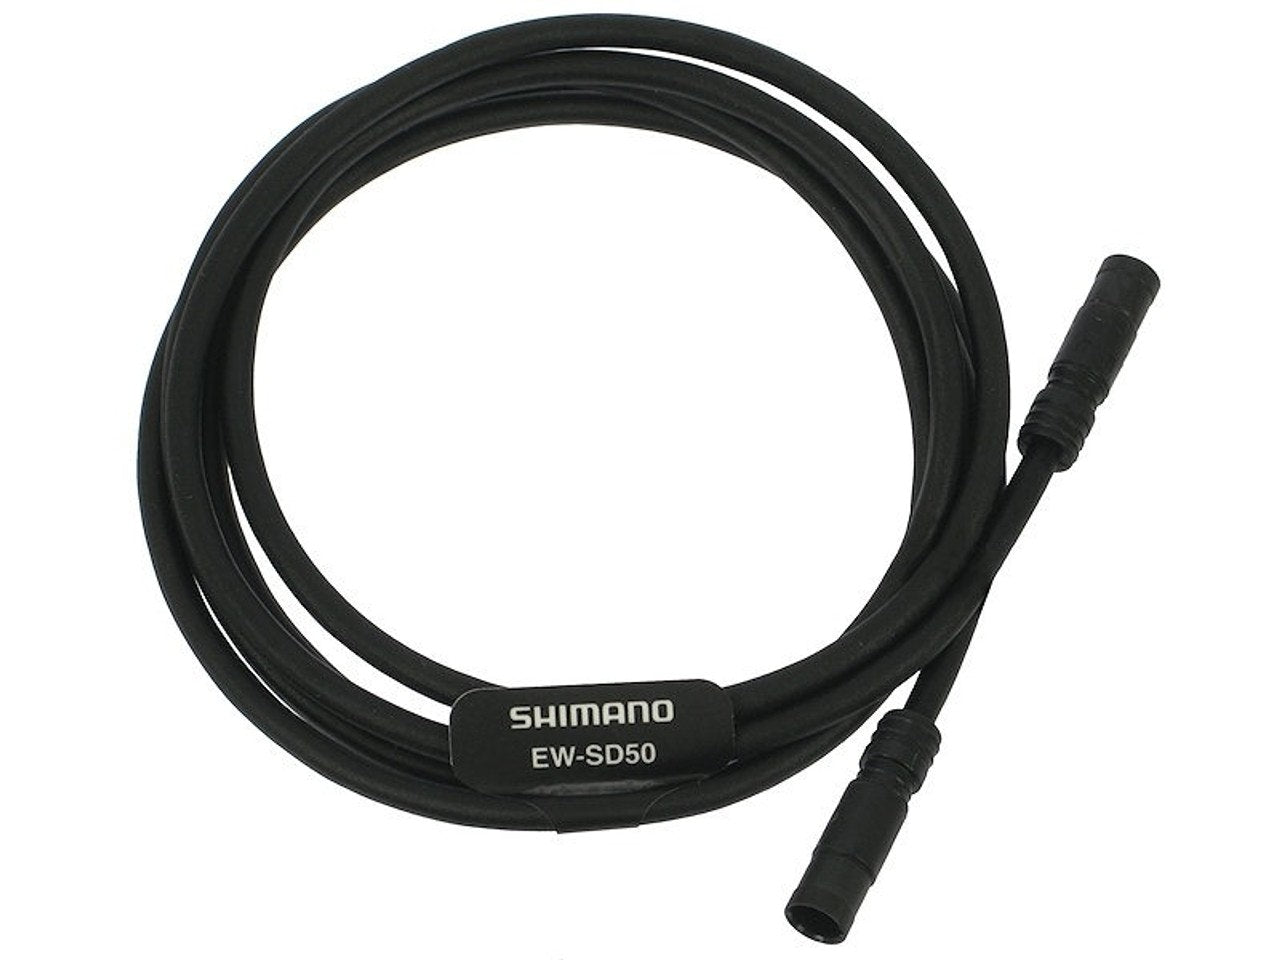 CABLE SHIMANO DI2 EW-SD50 350MM